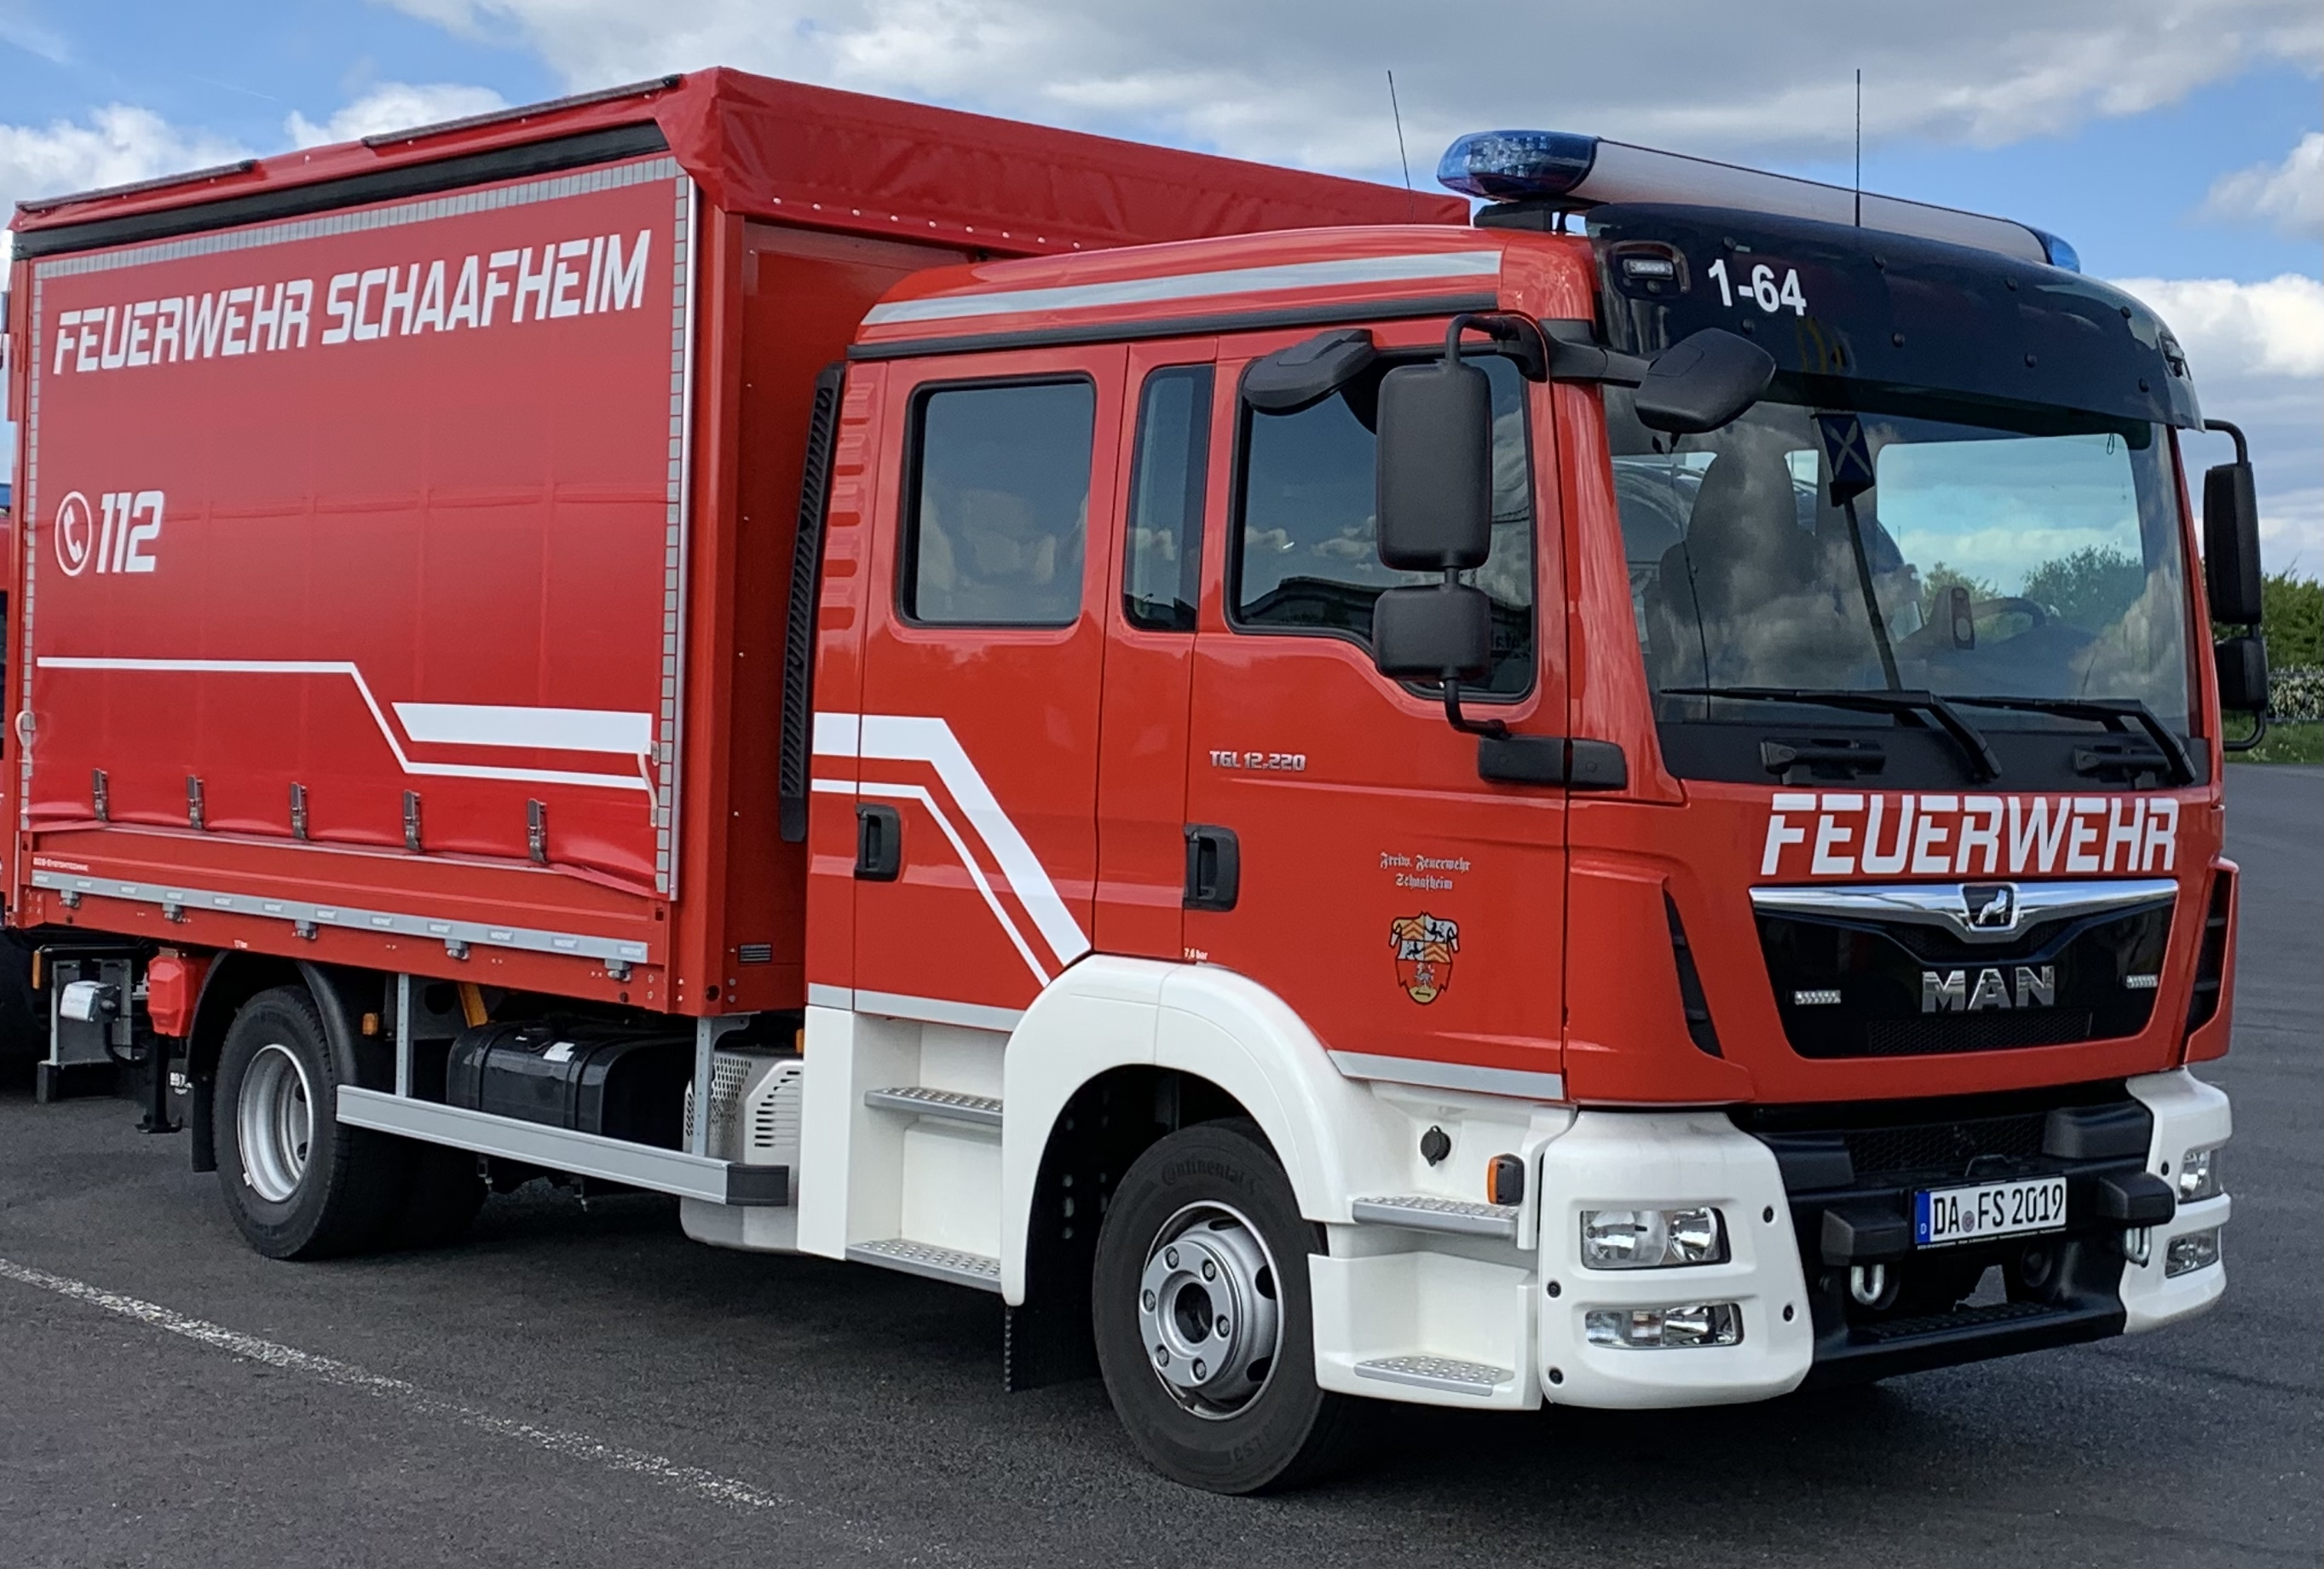 Das Löschgruppenfahrzeug wird hauptsächlich zur Brandbekämpfung, zur Förderung von Löschwasser sowie zur Durchführung von technischen Hilfeleistungen eingesetzt. Bei der Feuerwehr Schaafheim rückt das LF16-12 in der Regel als erstes Fahrzeug zur Einsatzstelle aus.